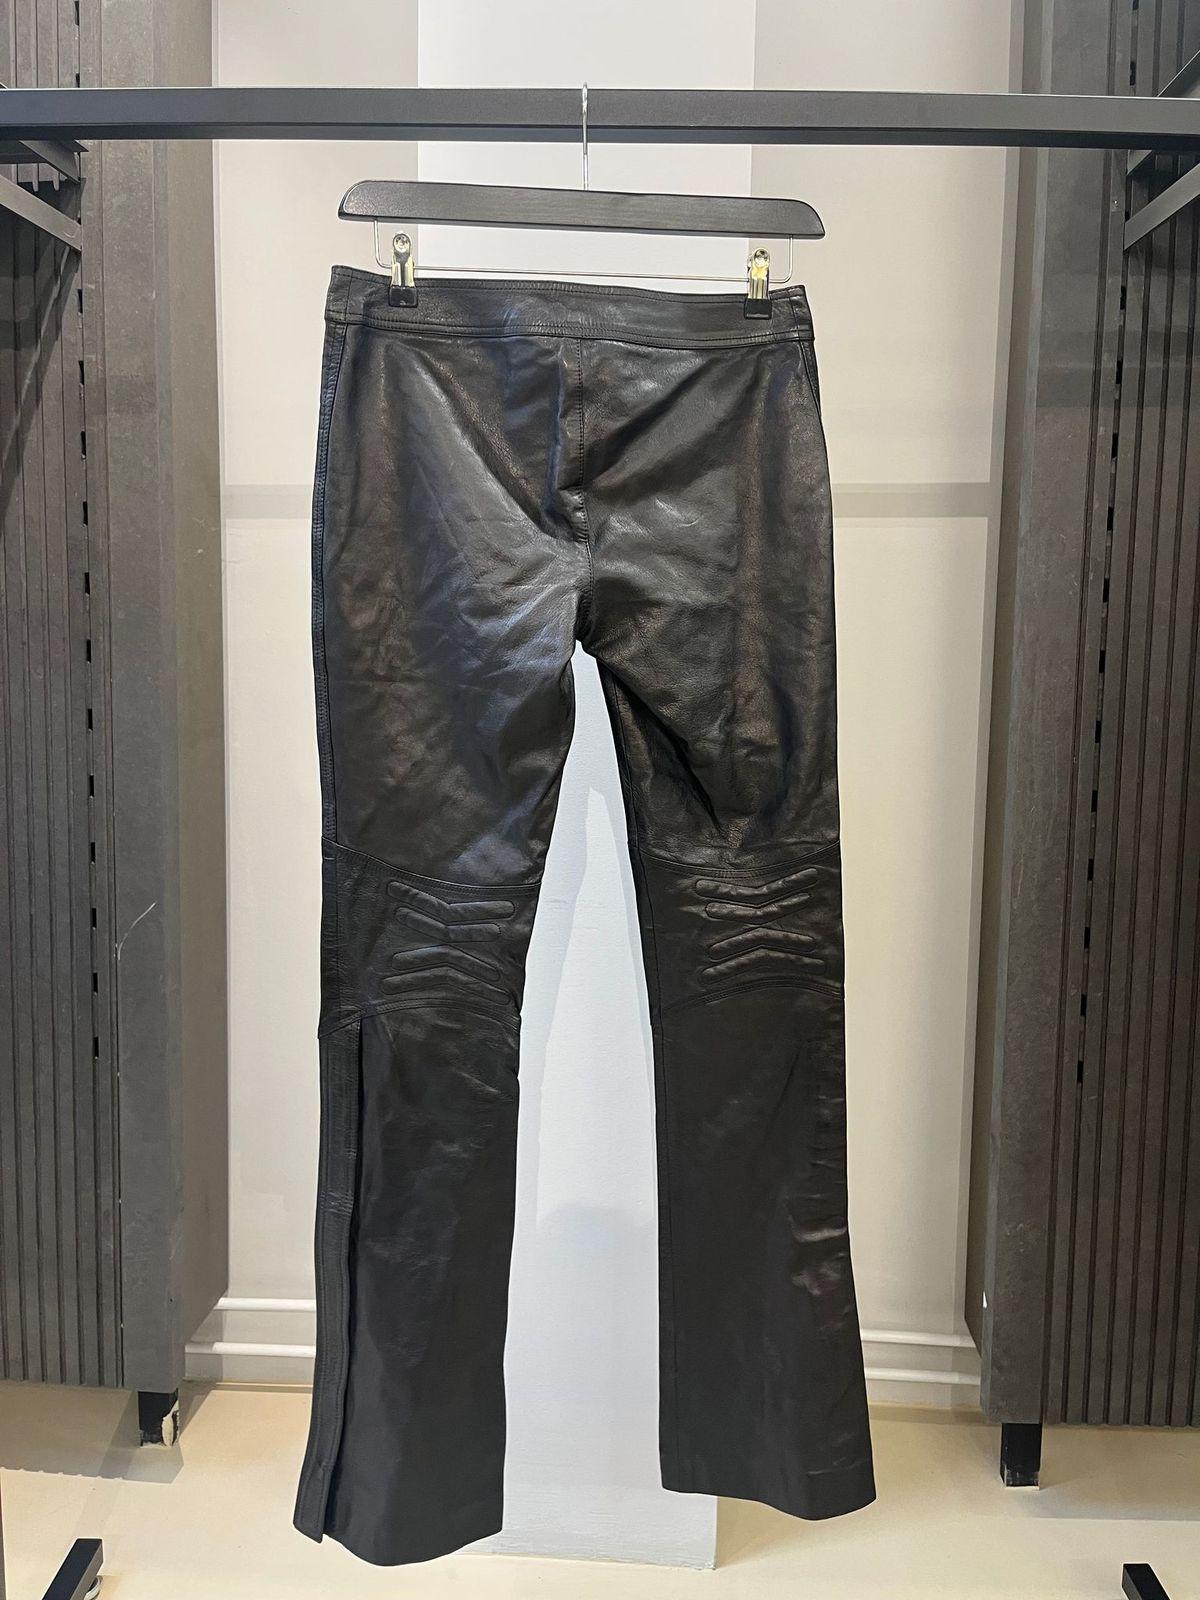 Gucci
Moto-Lederhose mit Gürtel
Größe 30 Zoll

Schöne Lederhose von Gucci mit Moto-Applikationen an den Knien und Reißverschlüssen. Sehr seltenes Stück. In gutem Zustand ohne Mängel, hergestellt in Italien.
